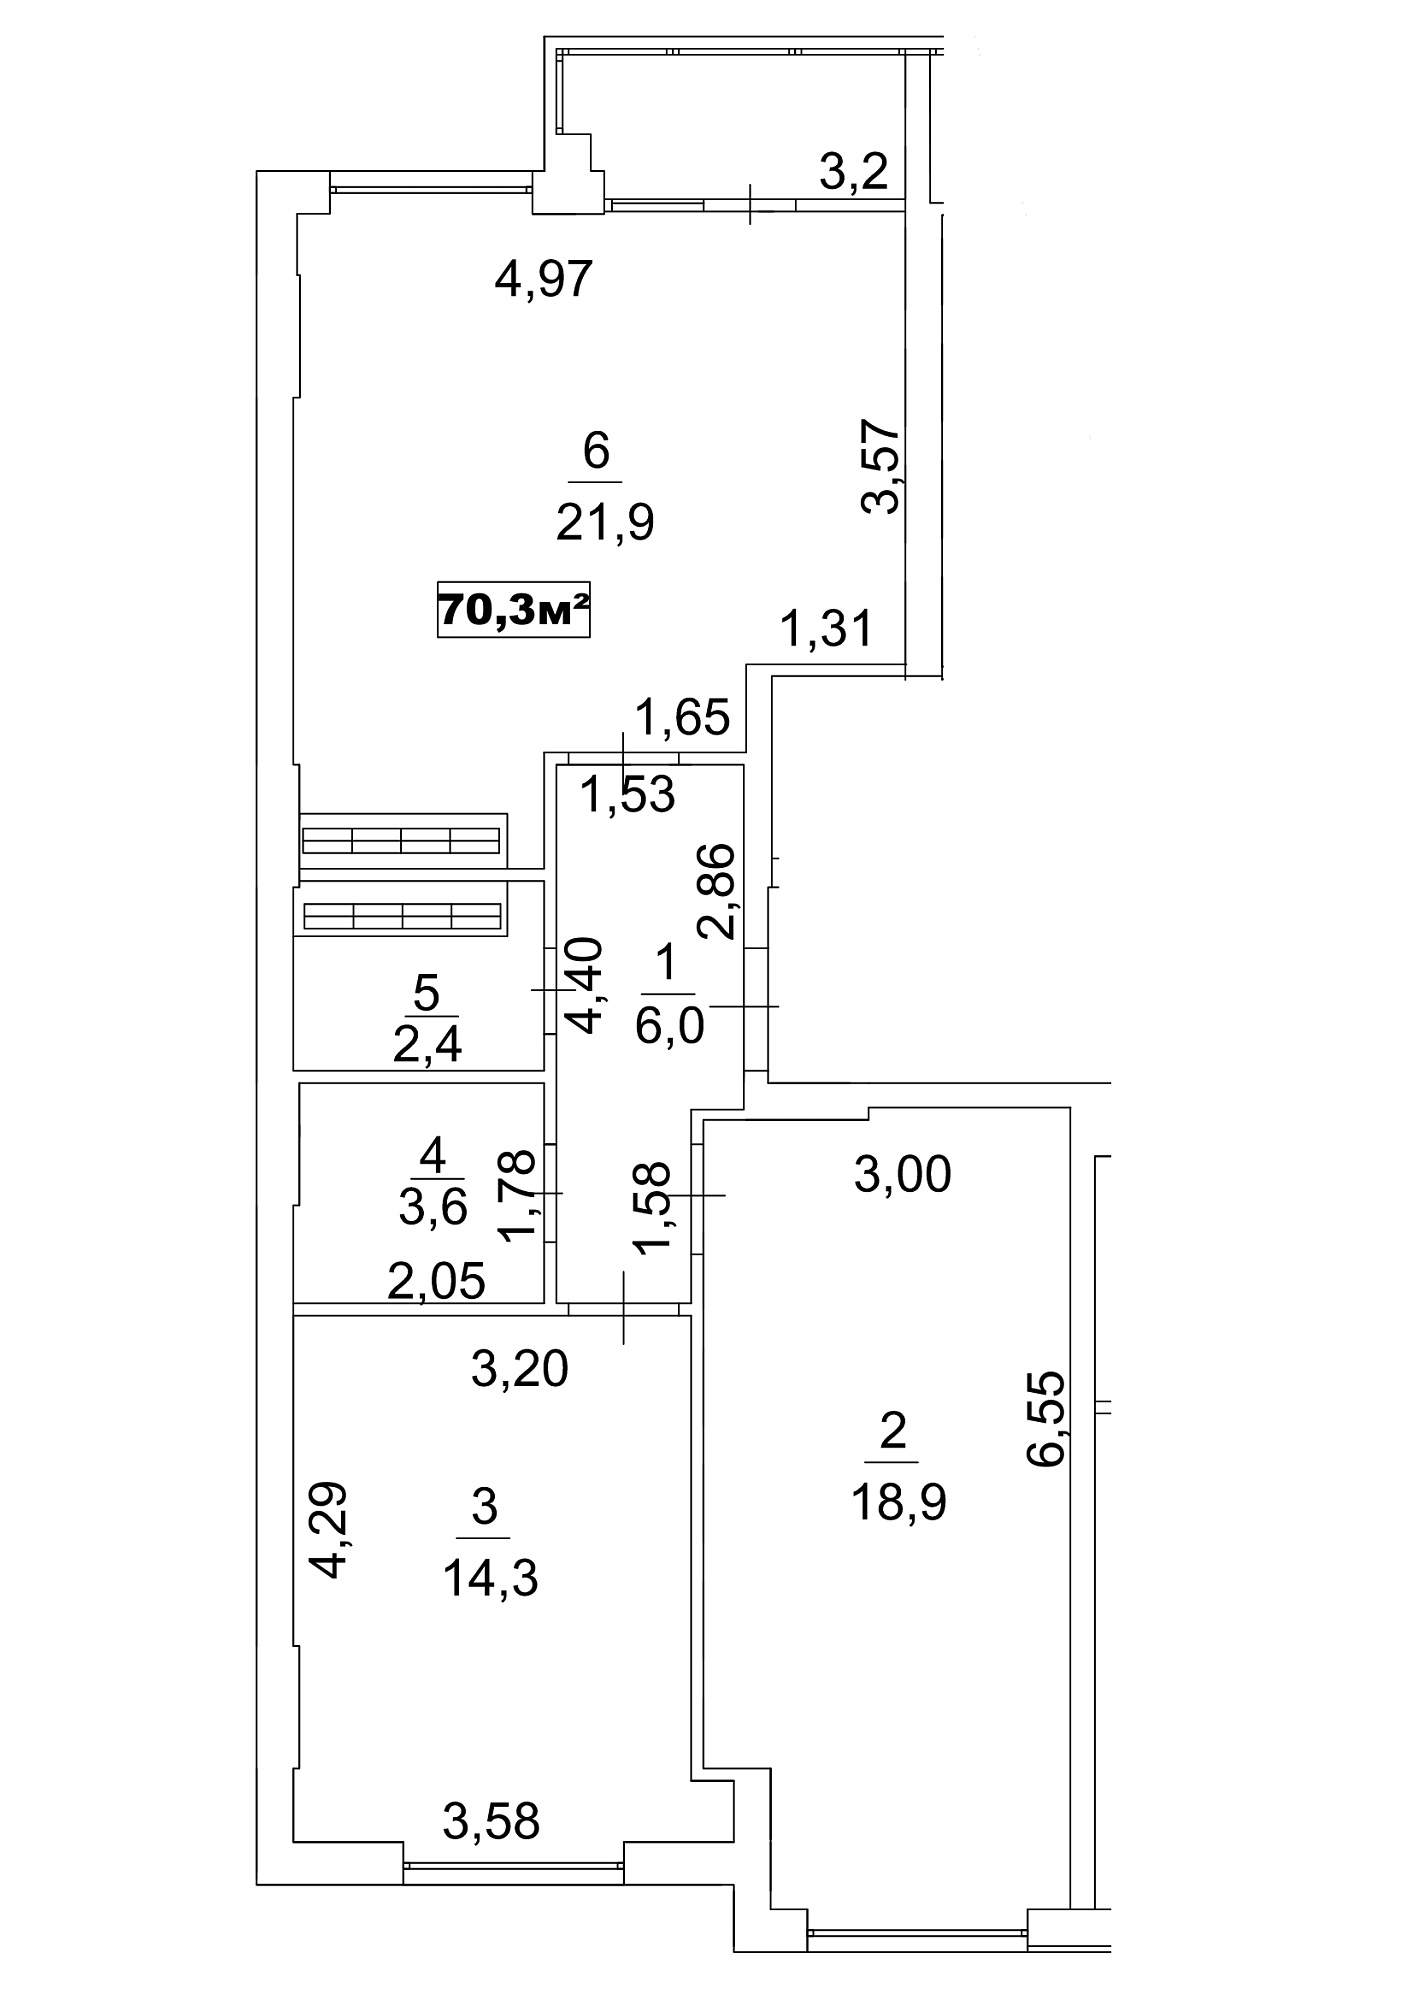 Планування 2-к квартира площею 70.3м2, AB-13-03/0018а.